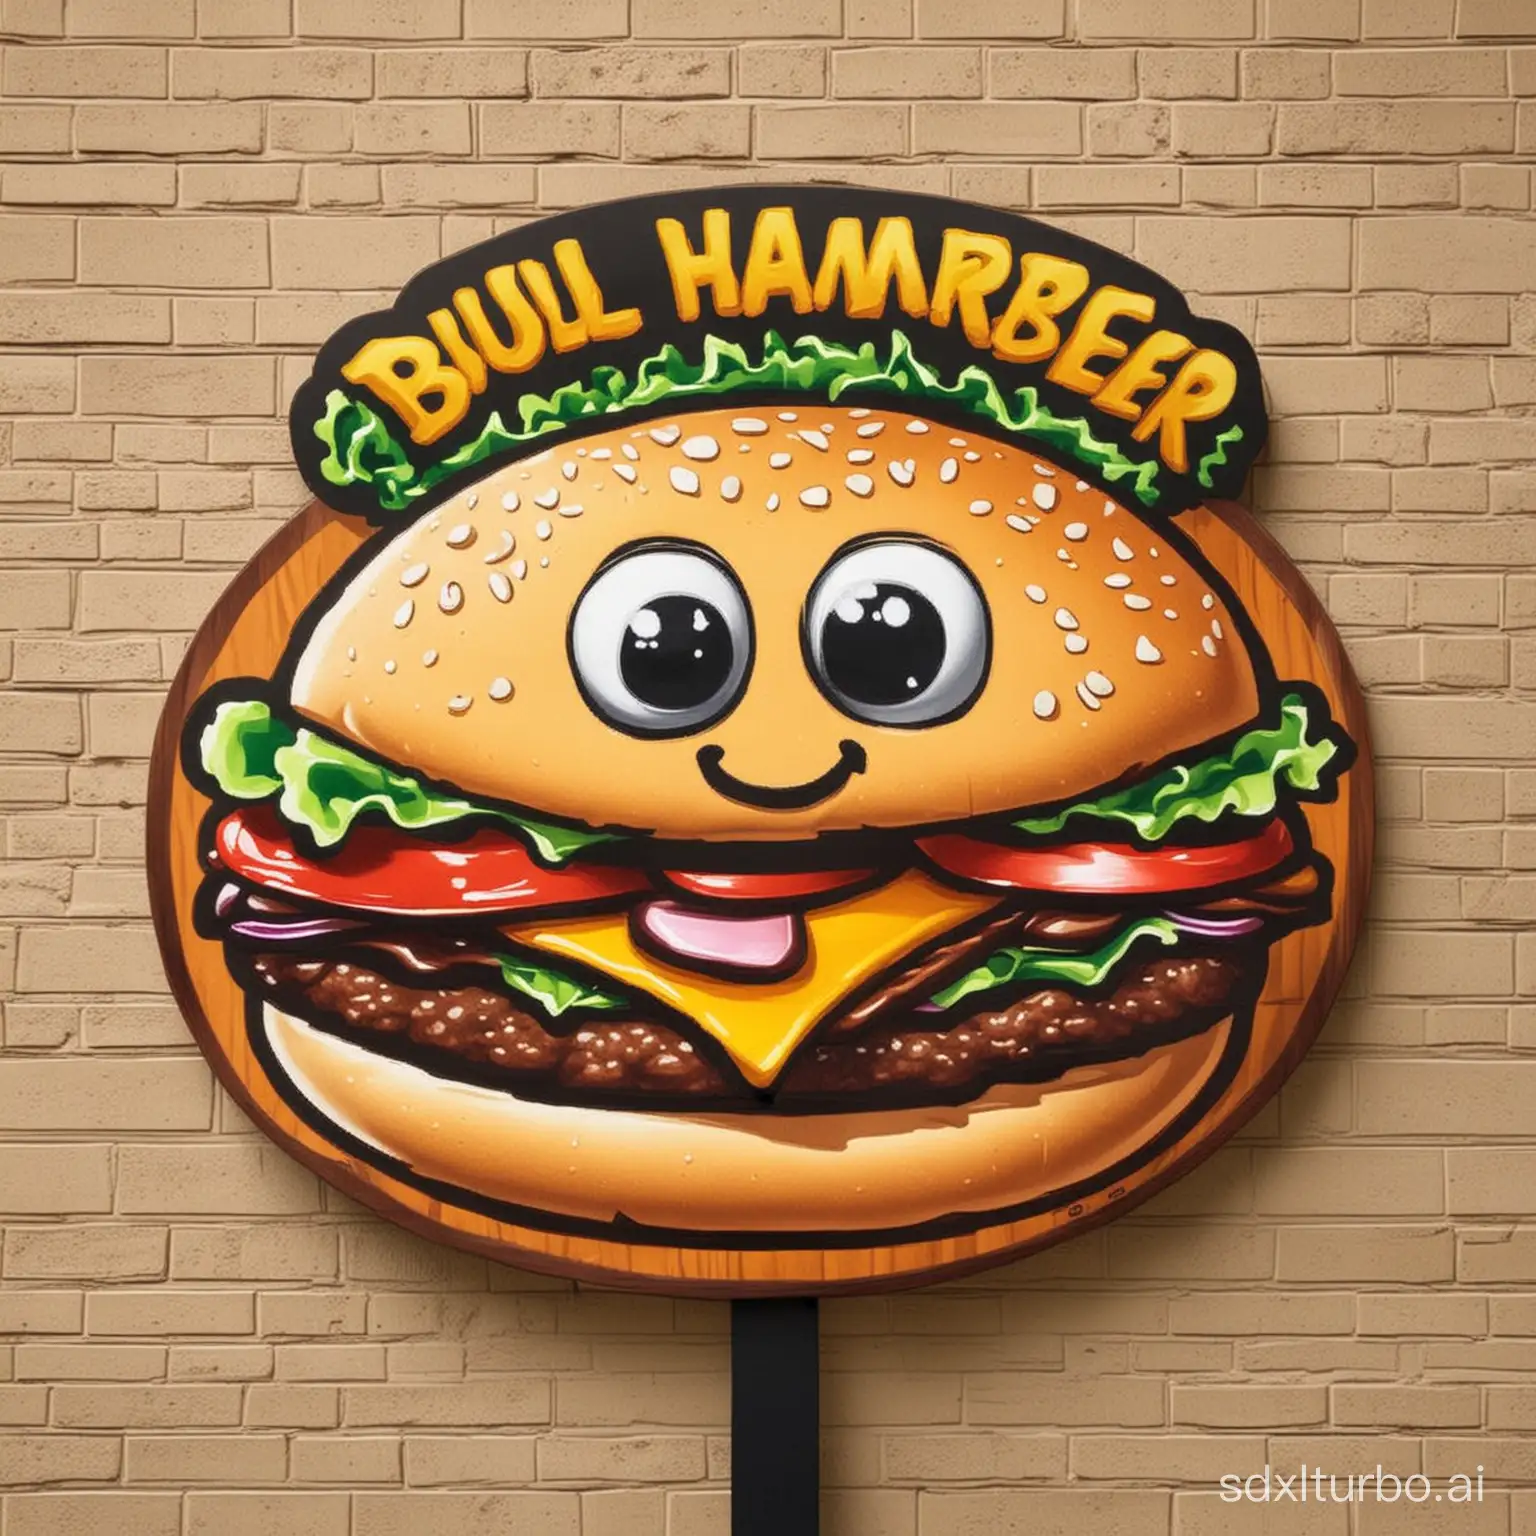 Colorful-Cartoon-Hamburger-Sign-Bull-A-Hamburger-Entices-Passersby